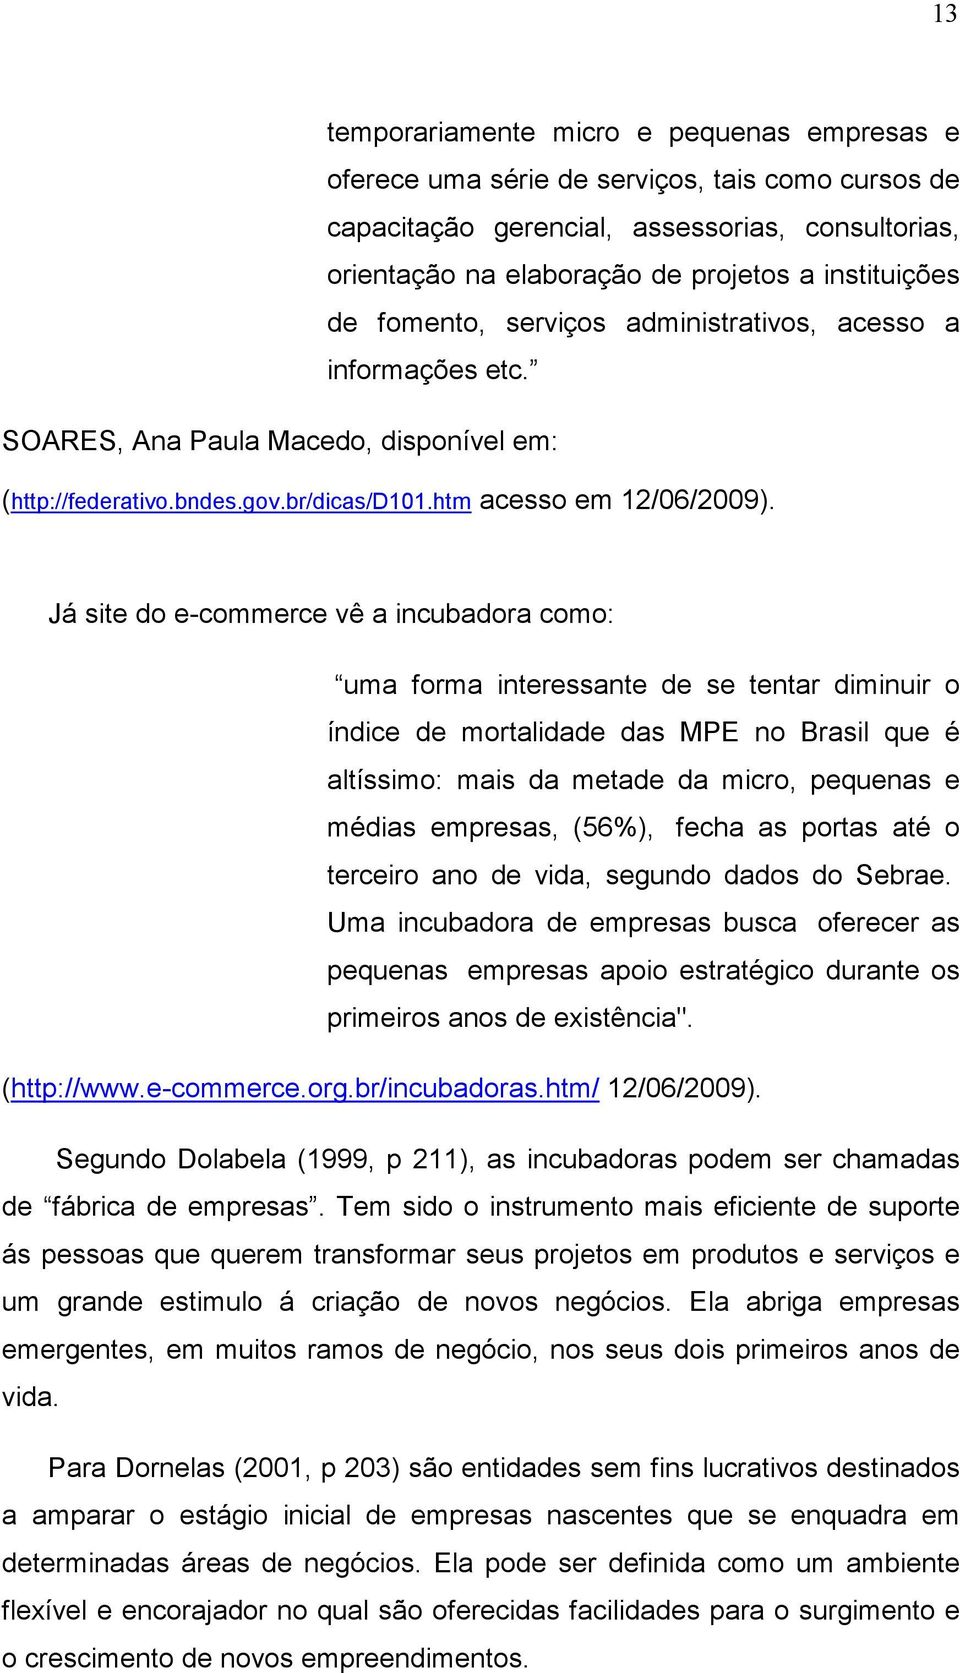 Já site do e-commerce vê a incubadora como: uma forma interessante de se tentar diminuir o índice de mortalidade das MPE no Brasil que é altíssimo: mais da metade da micro, pequenas e médias